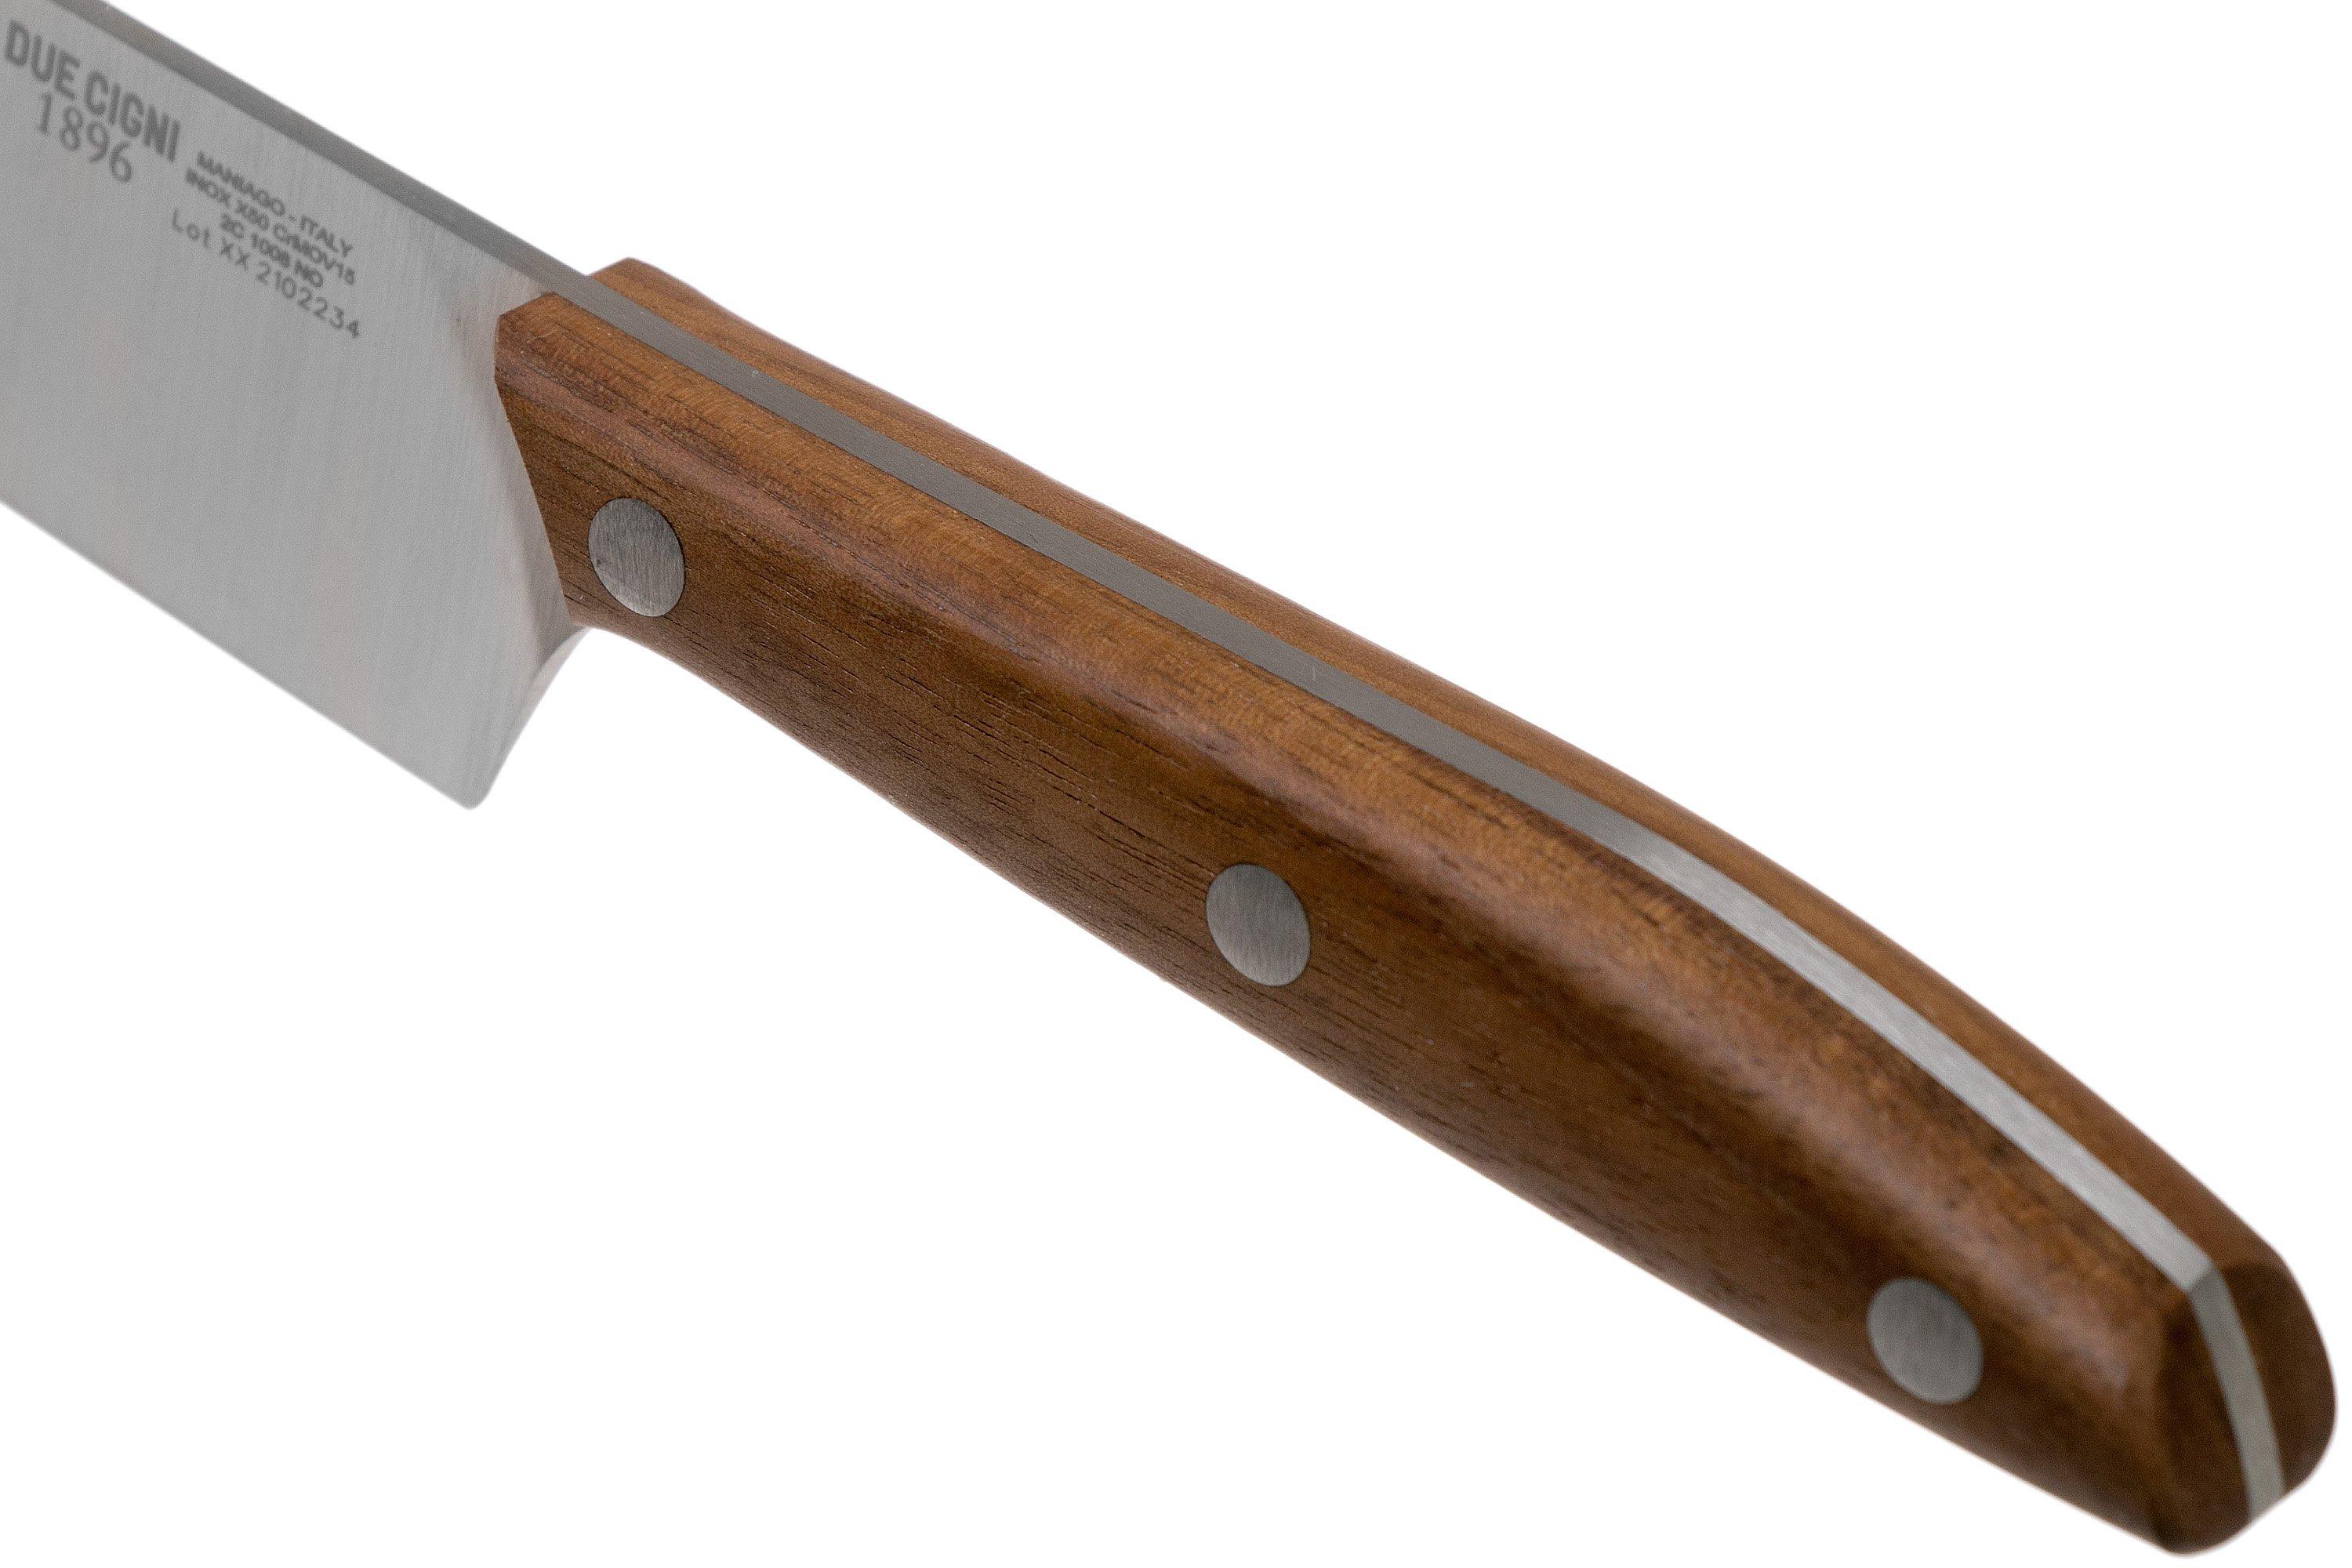 Due Cigni - Knife block 6 pcs - 1896 SLIM - Design by FOX Knives